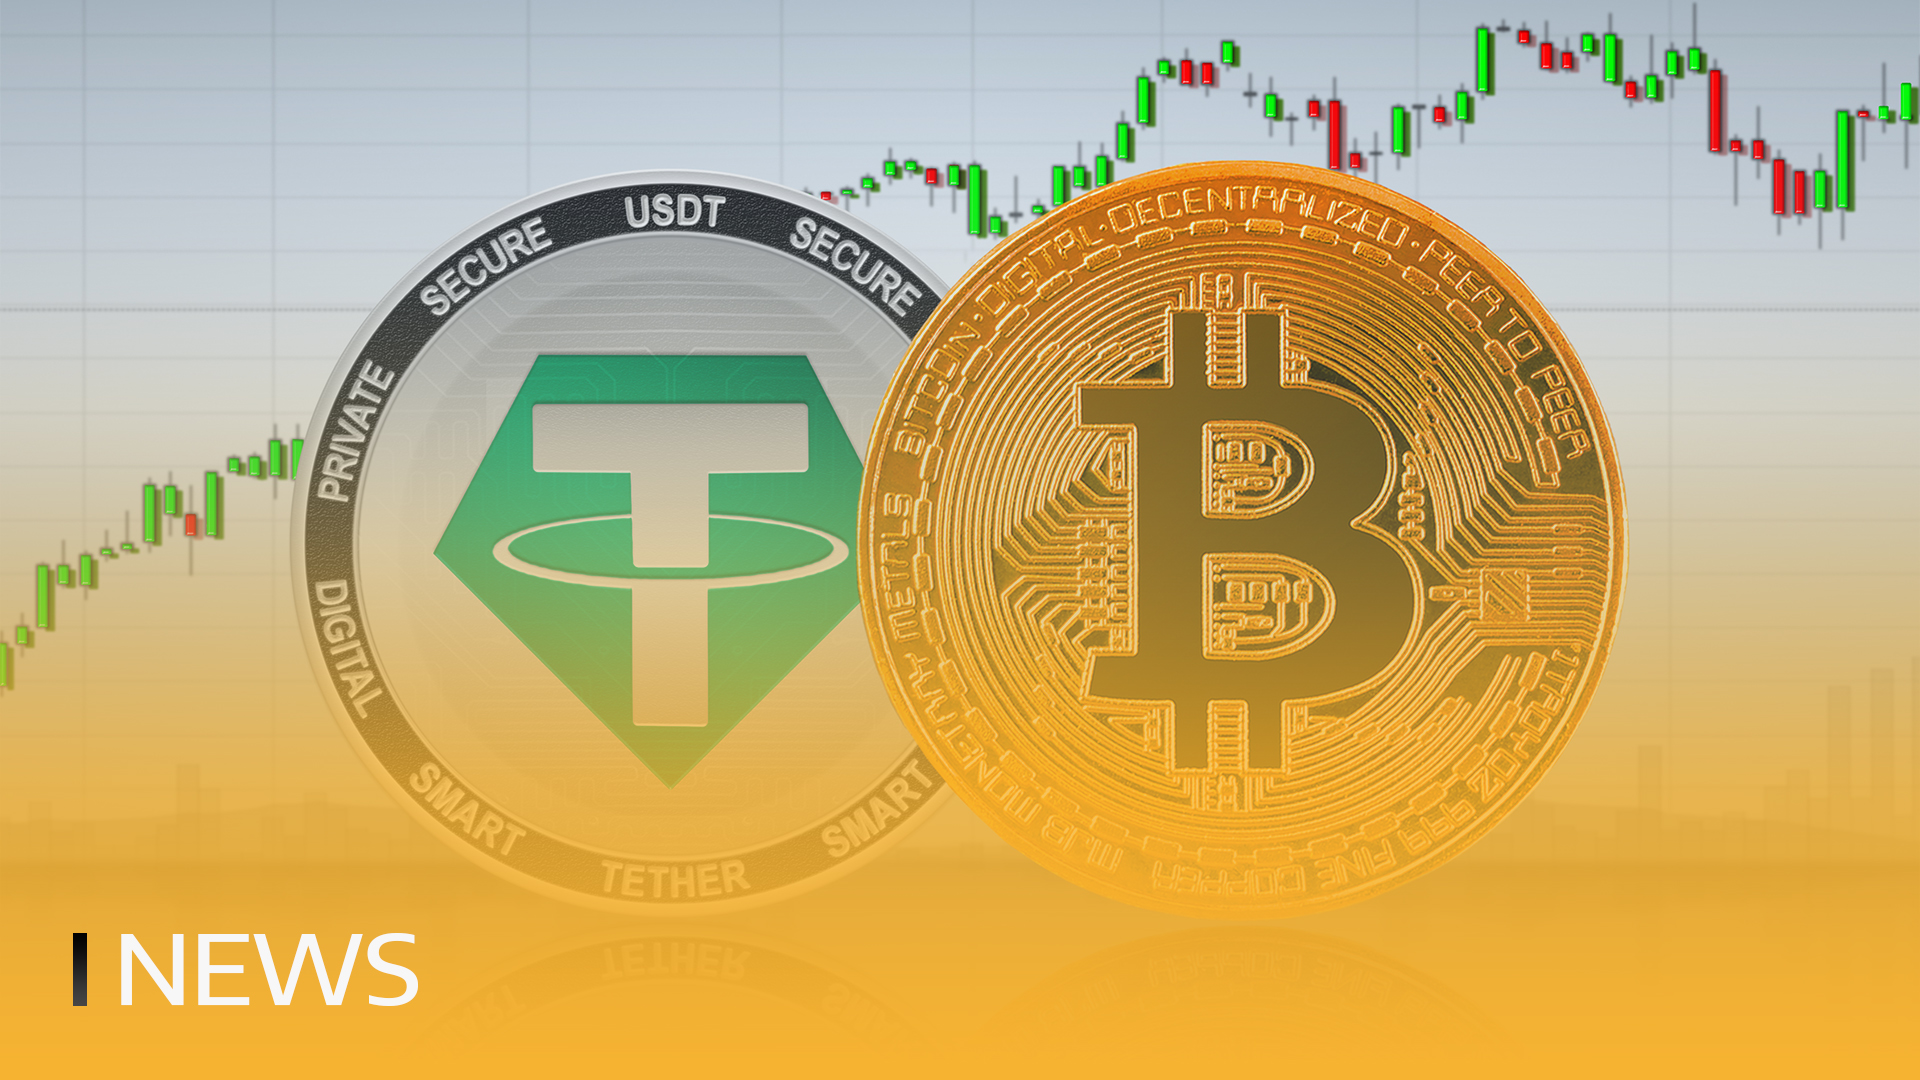 Tether acquista oltre 600 milioni di dollari in Bitcoin